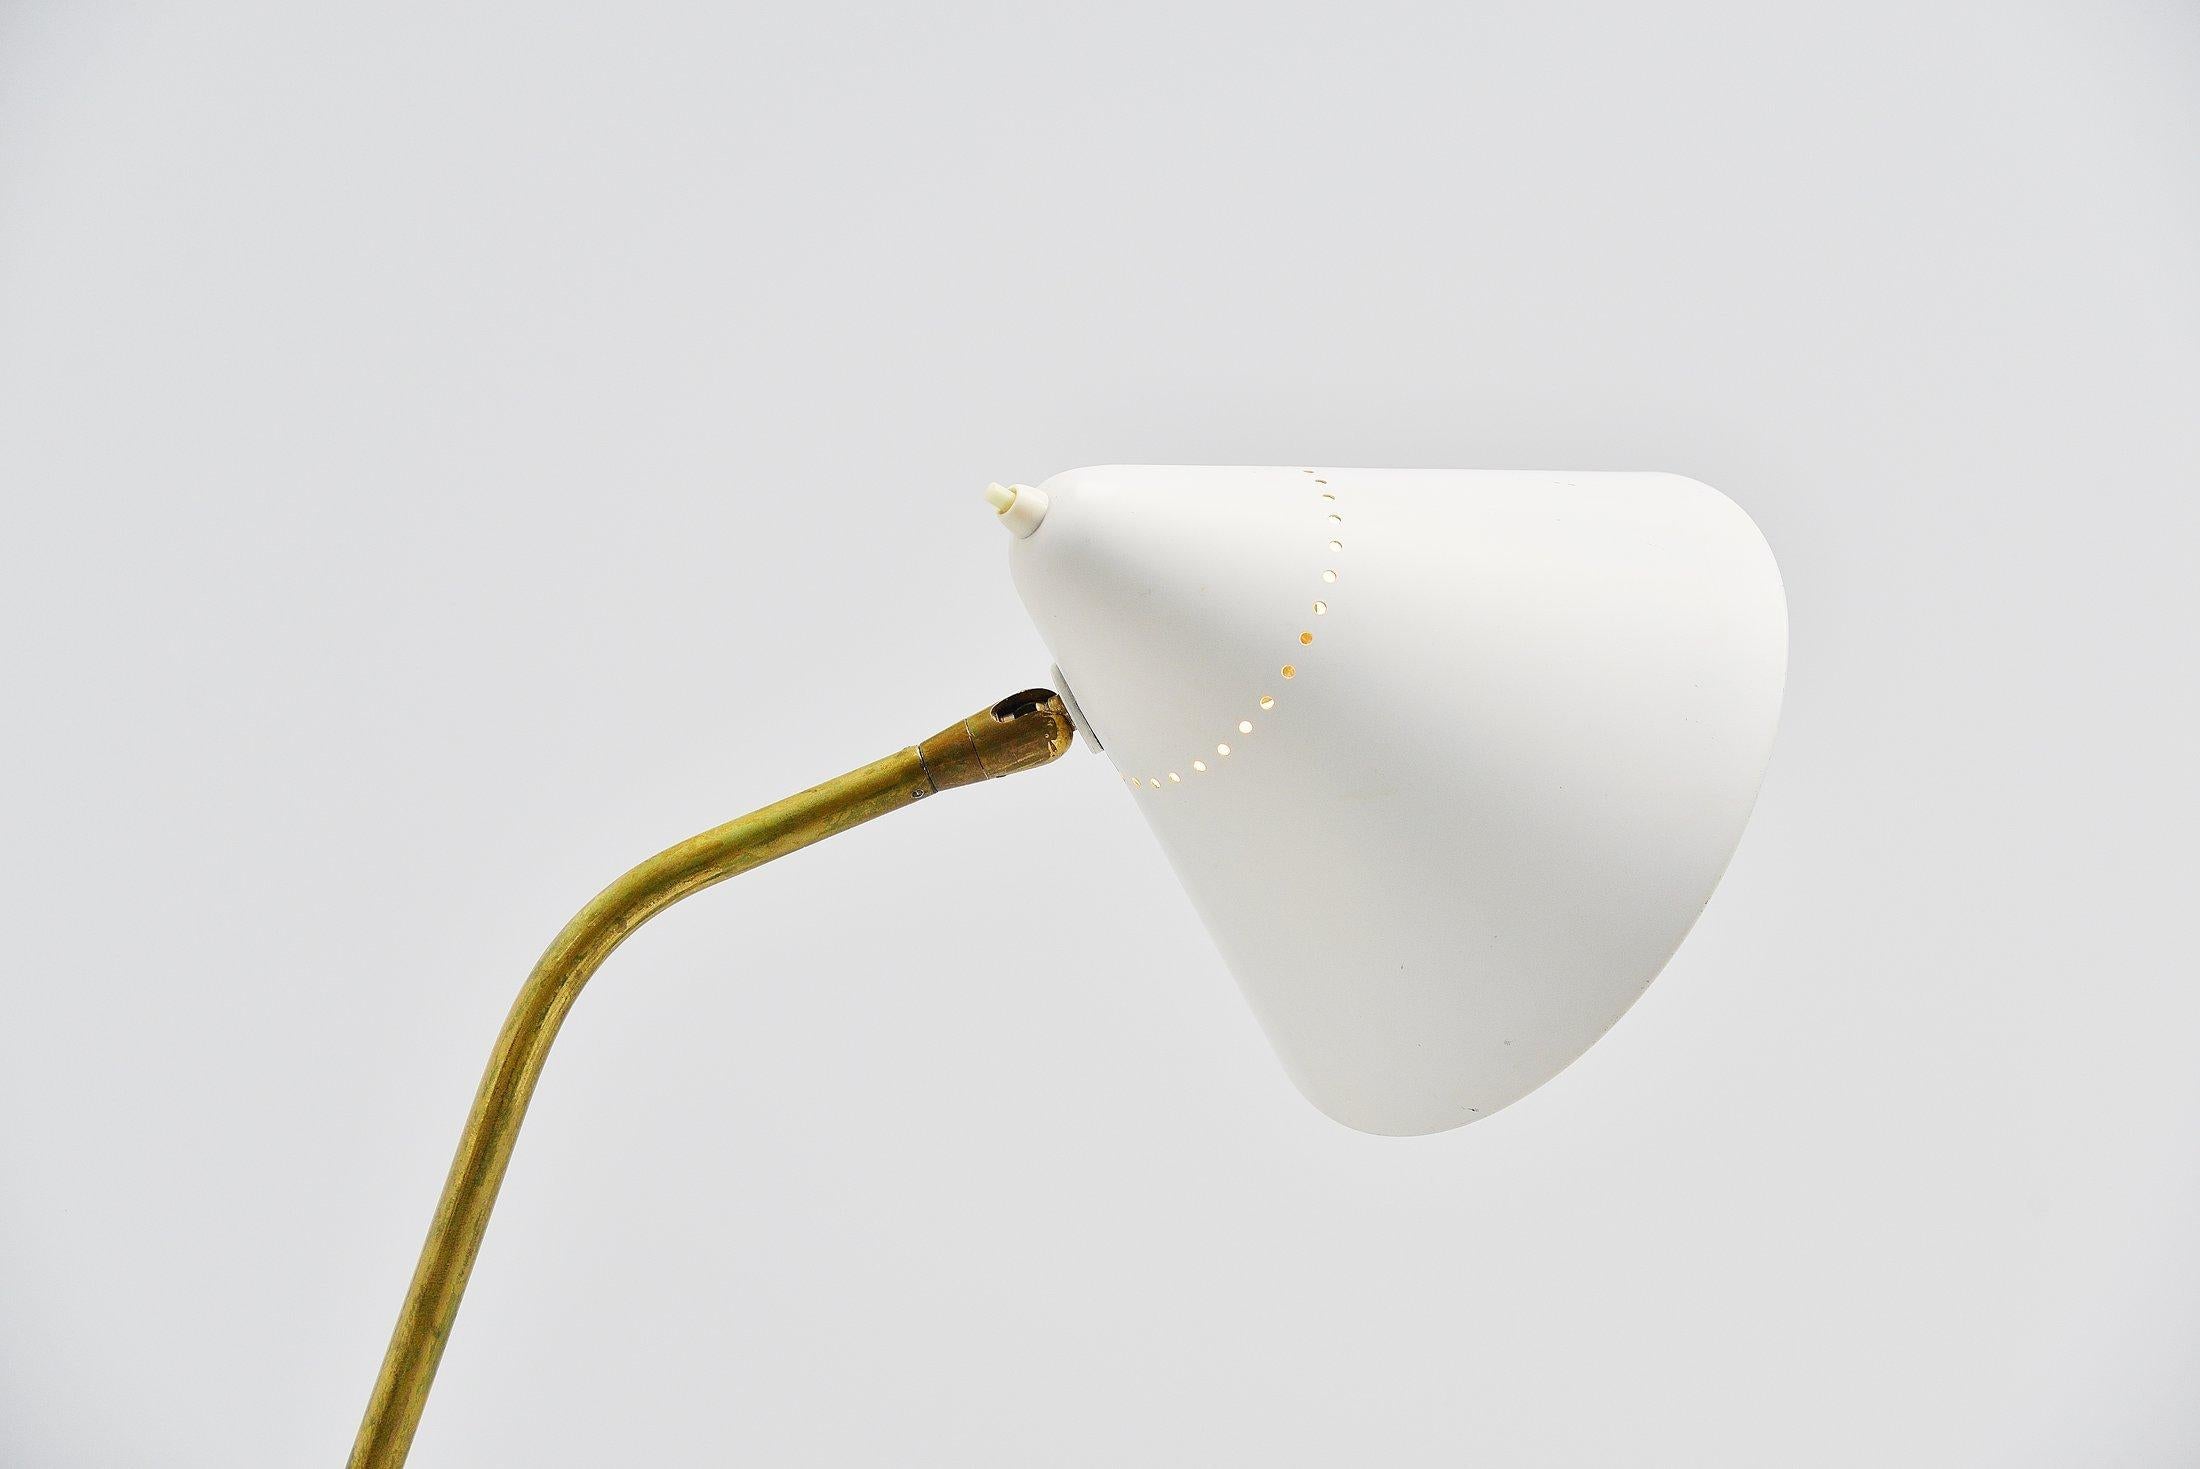 Très beau lampadaire sophistiqué conçu par Giuseppe Ostuni et fabriqué par Oluce, Italie, 1952. Cette lampe a une tige dont l'angle est réglable et l'abat-jour l'est également. Très belle tige en laiton massif avec un abat-jour en aluminium blanc et